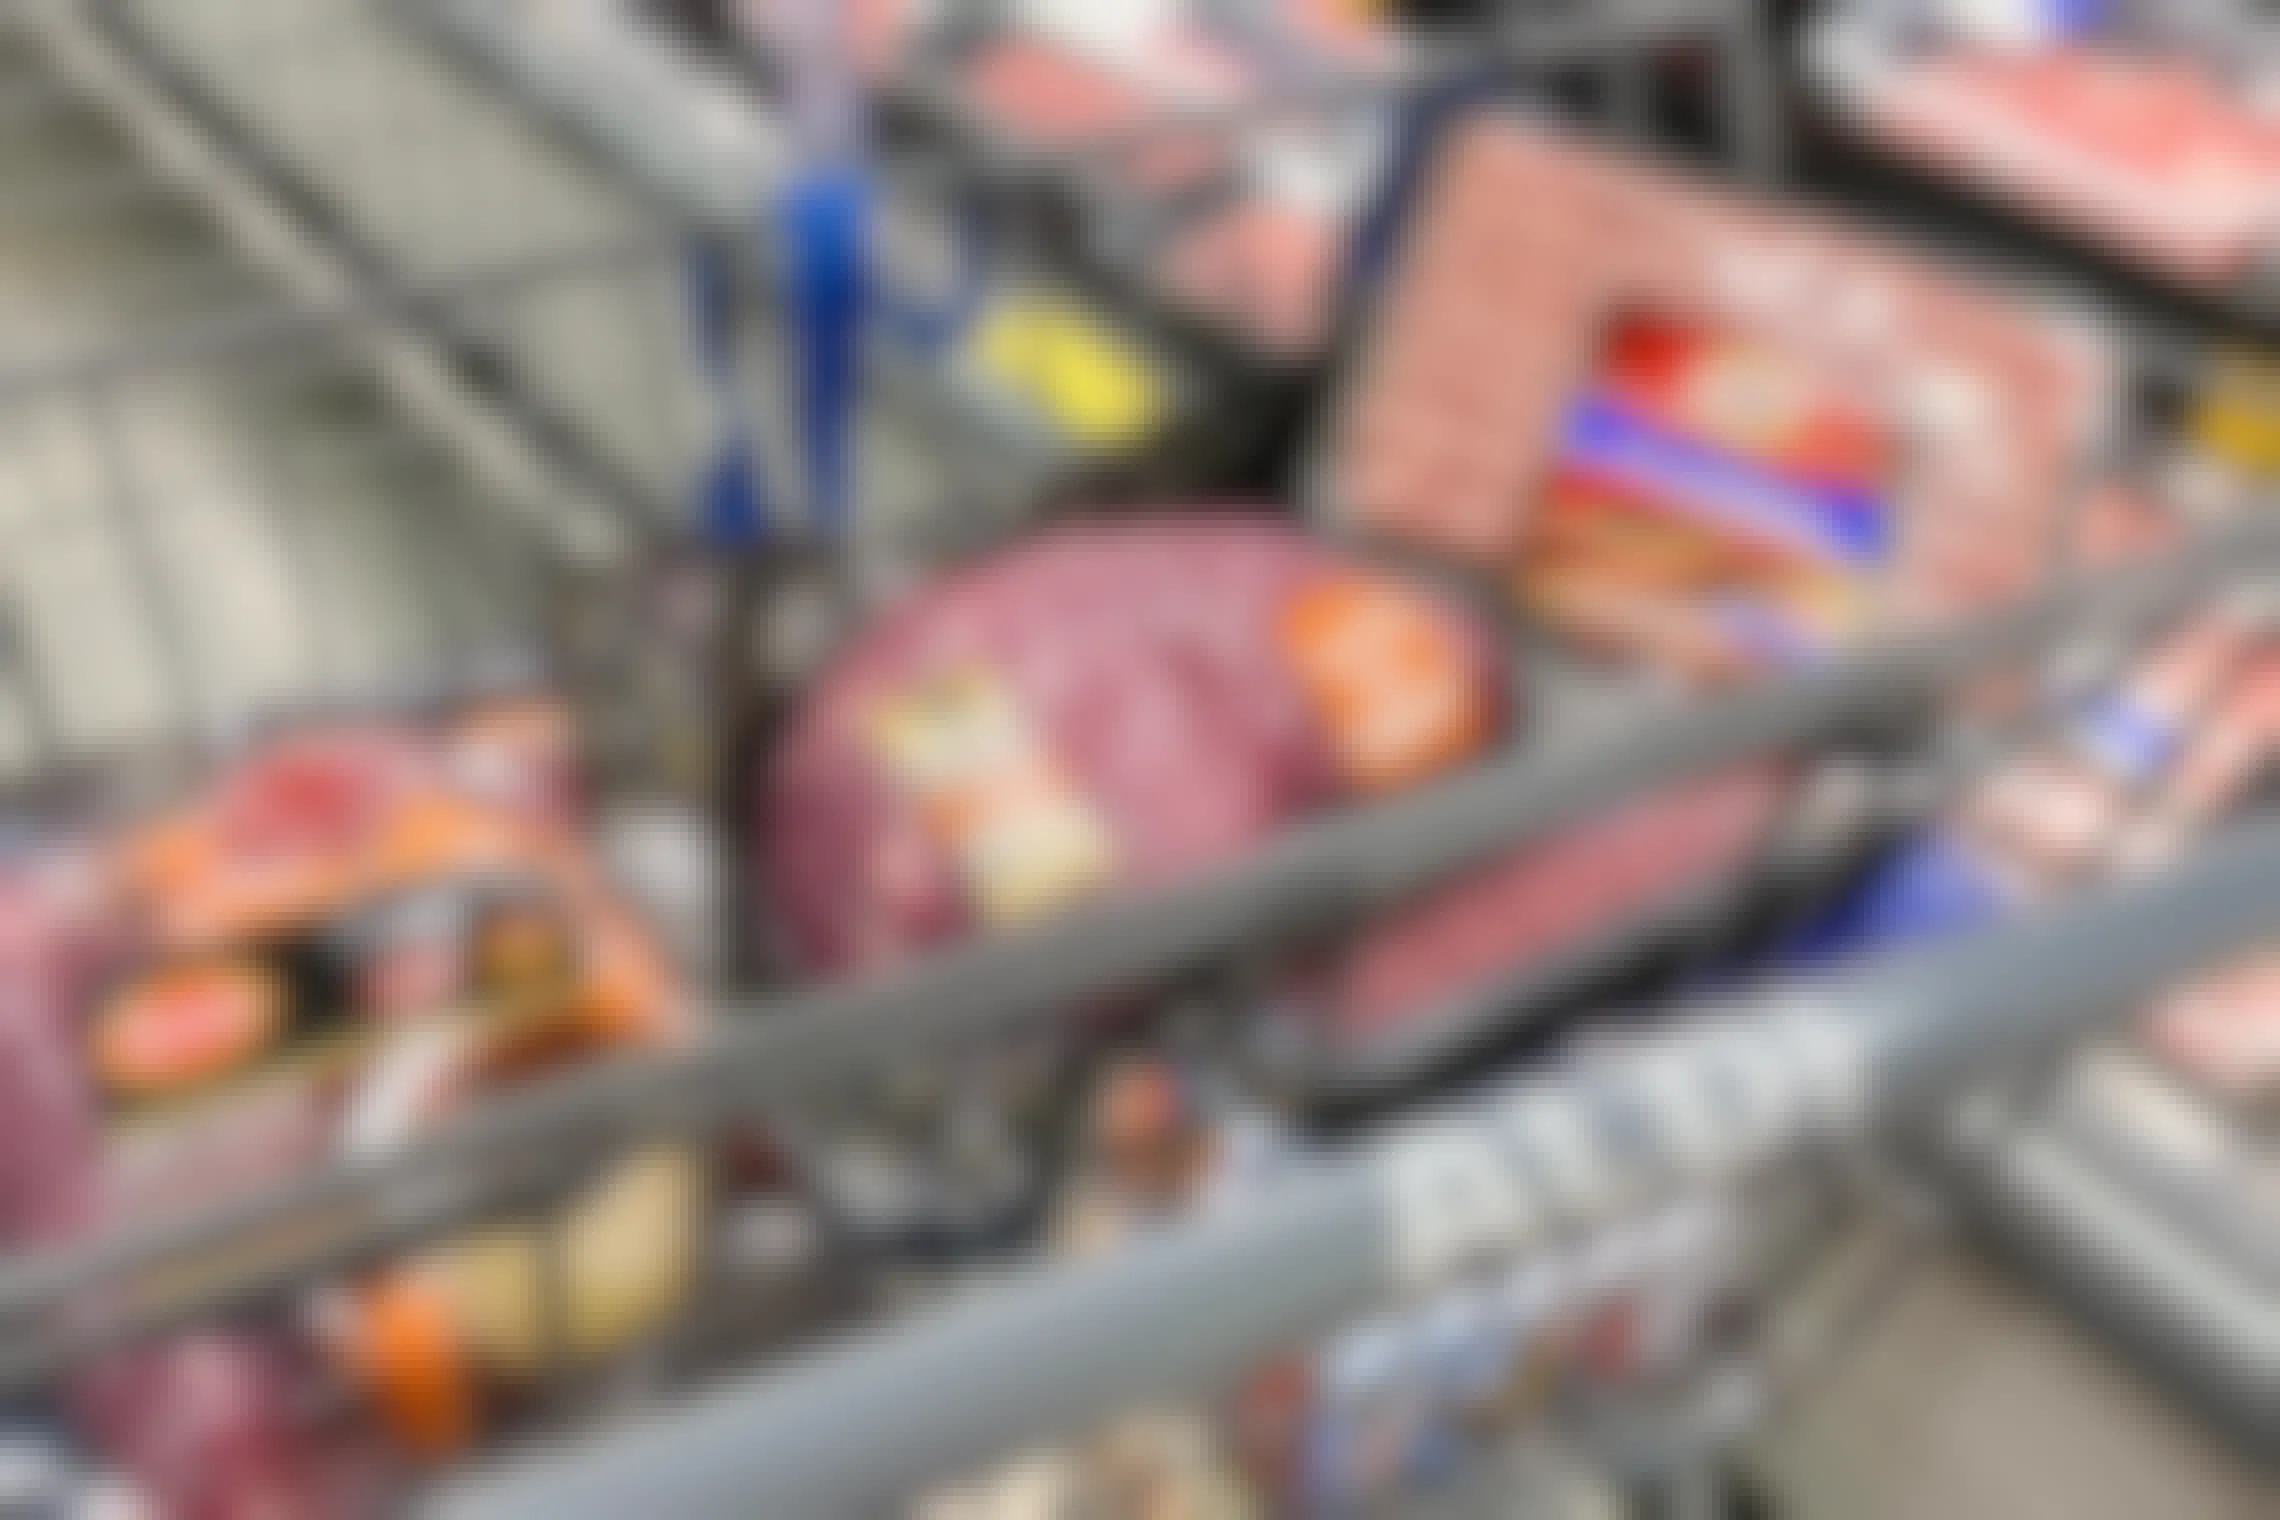 Meat in an Aldi shopping basket